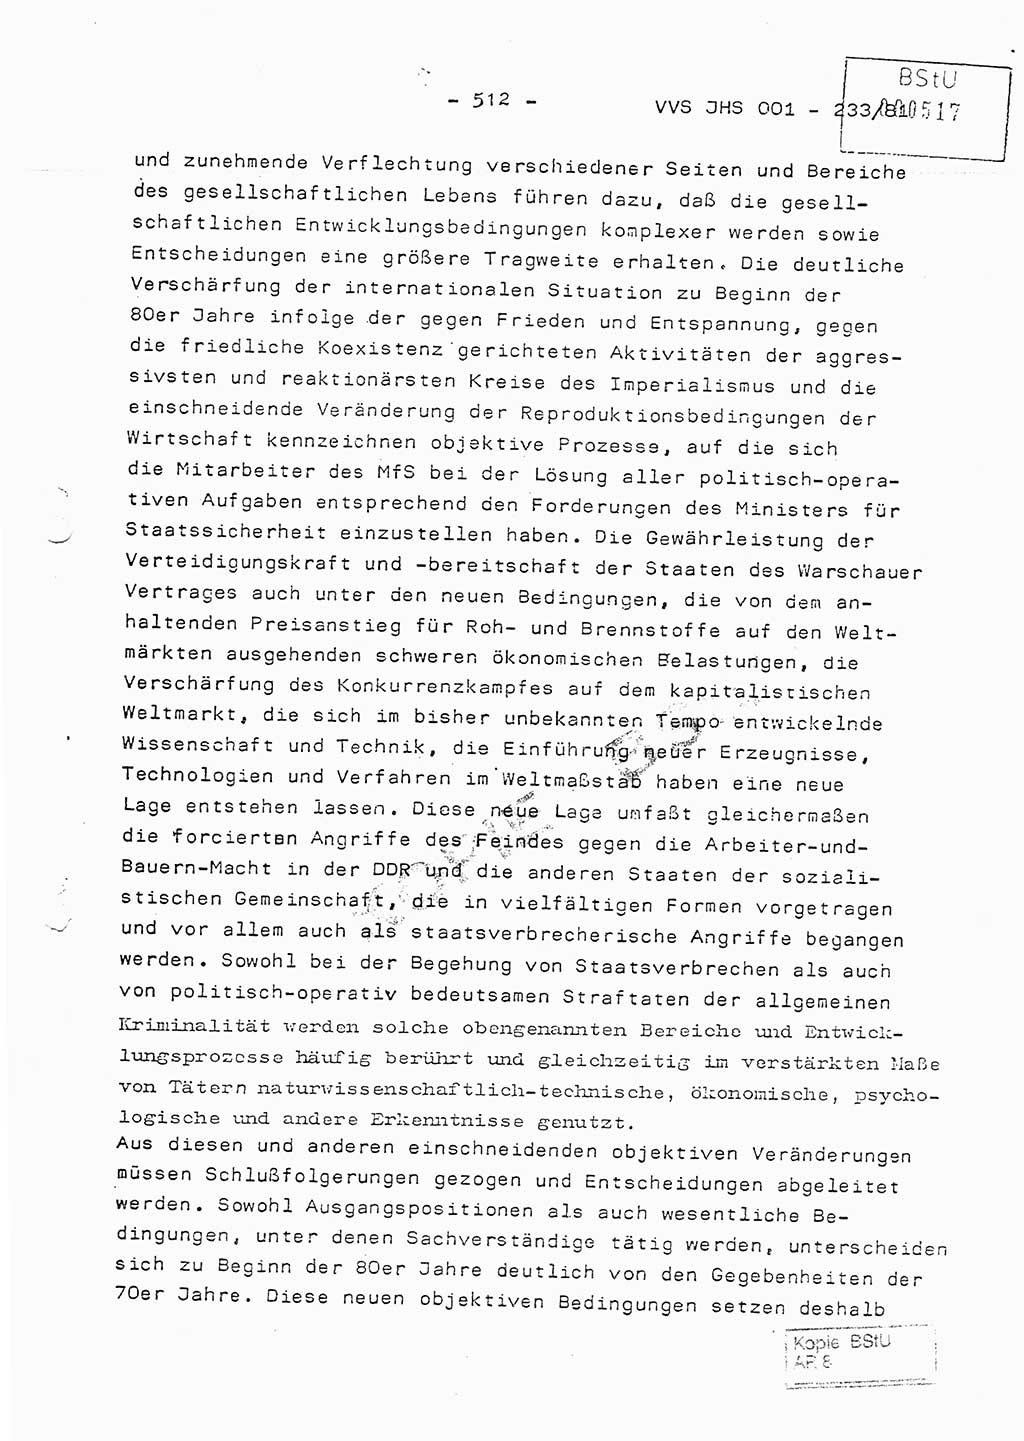 Dissertation Oberstleutnant Horst Zank (JHS), Oberstleutnant Dr. Karl-Heinz Knoblauch (JHS), Oberstleutnant Gustav-Adolf Kowalewski (HA Ⅸ), Oberstleutnant Wolfgang Plötner (HA Ⅸ), Ministerium für Staatssicherheit (MfS) [Deutsche Demokratische Republik (DDR)], Juristische Hochschule (JHS), Vertrauliche Verschlußsache (VVS) o001-233/81, Potsdam 1981, Blatt 512 (Diss. MfS DDR JHS VVS o001-233/81 1981, Bl. 512)